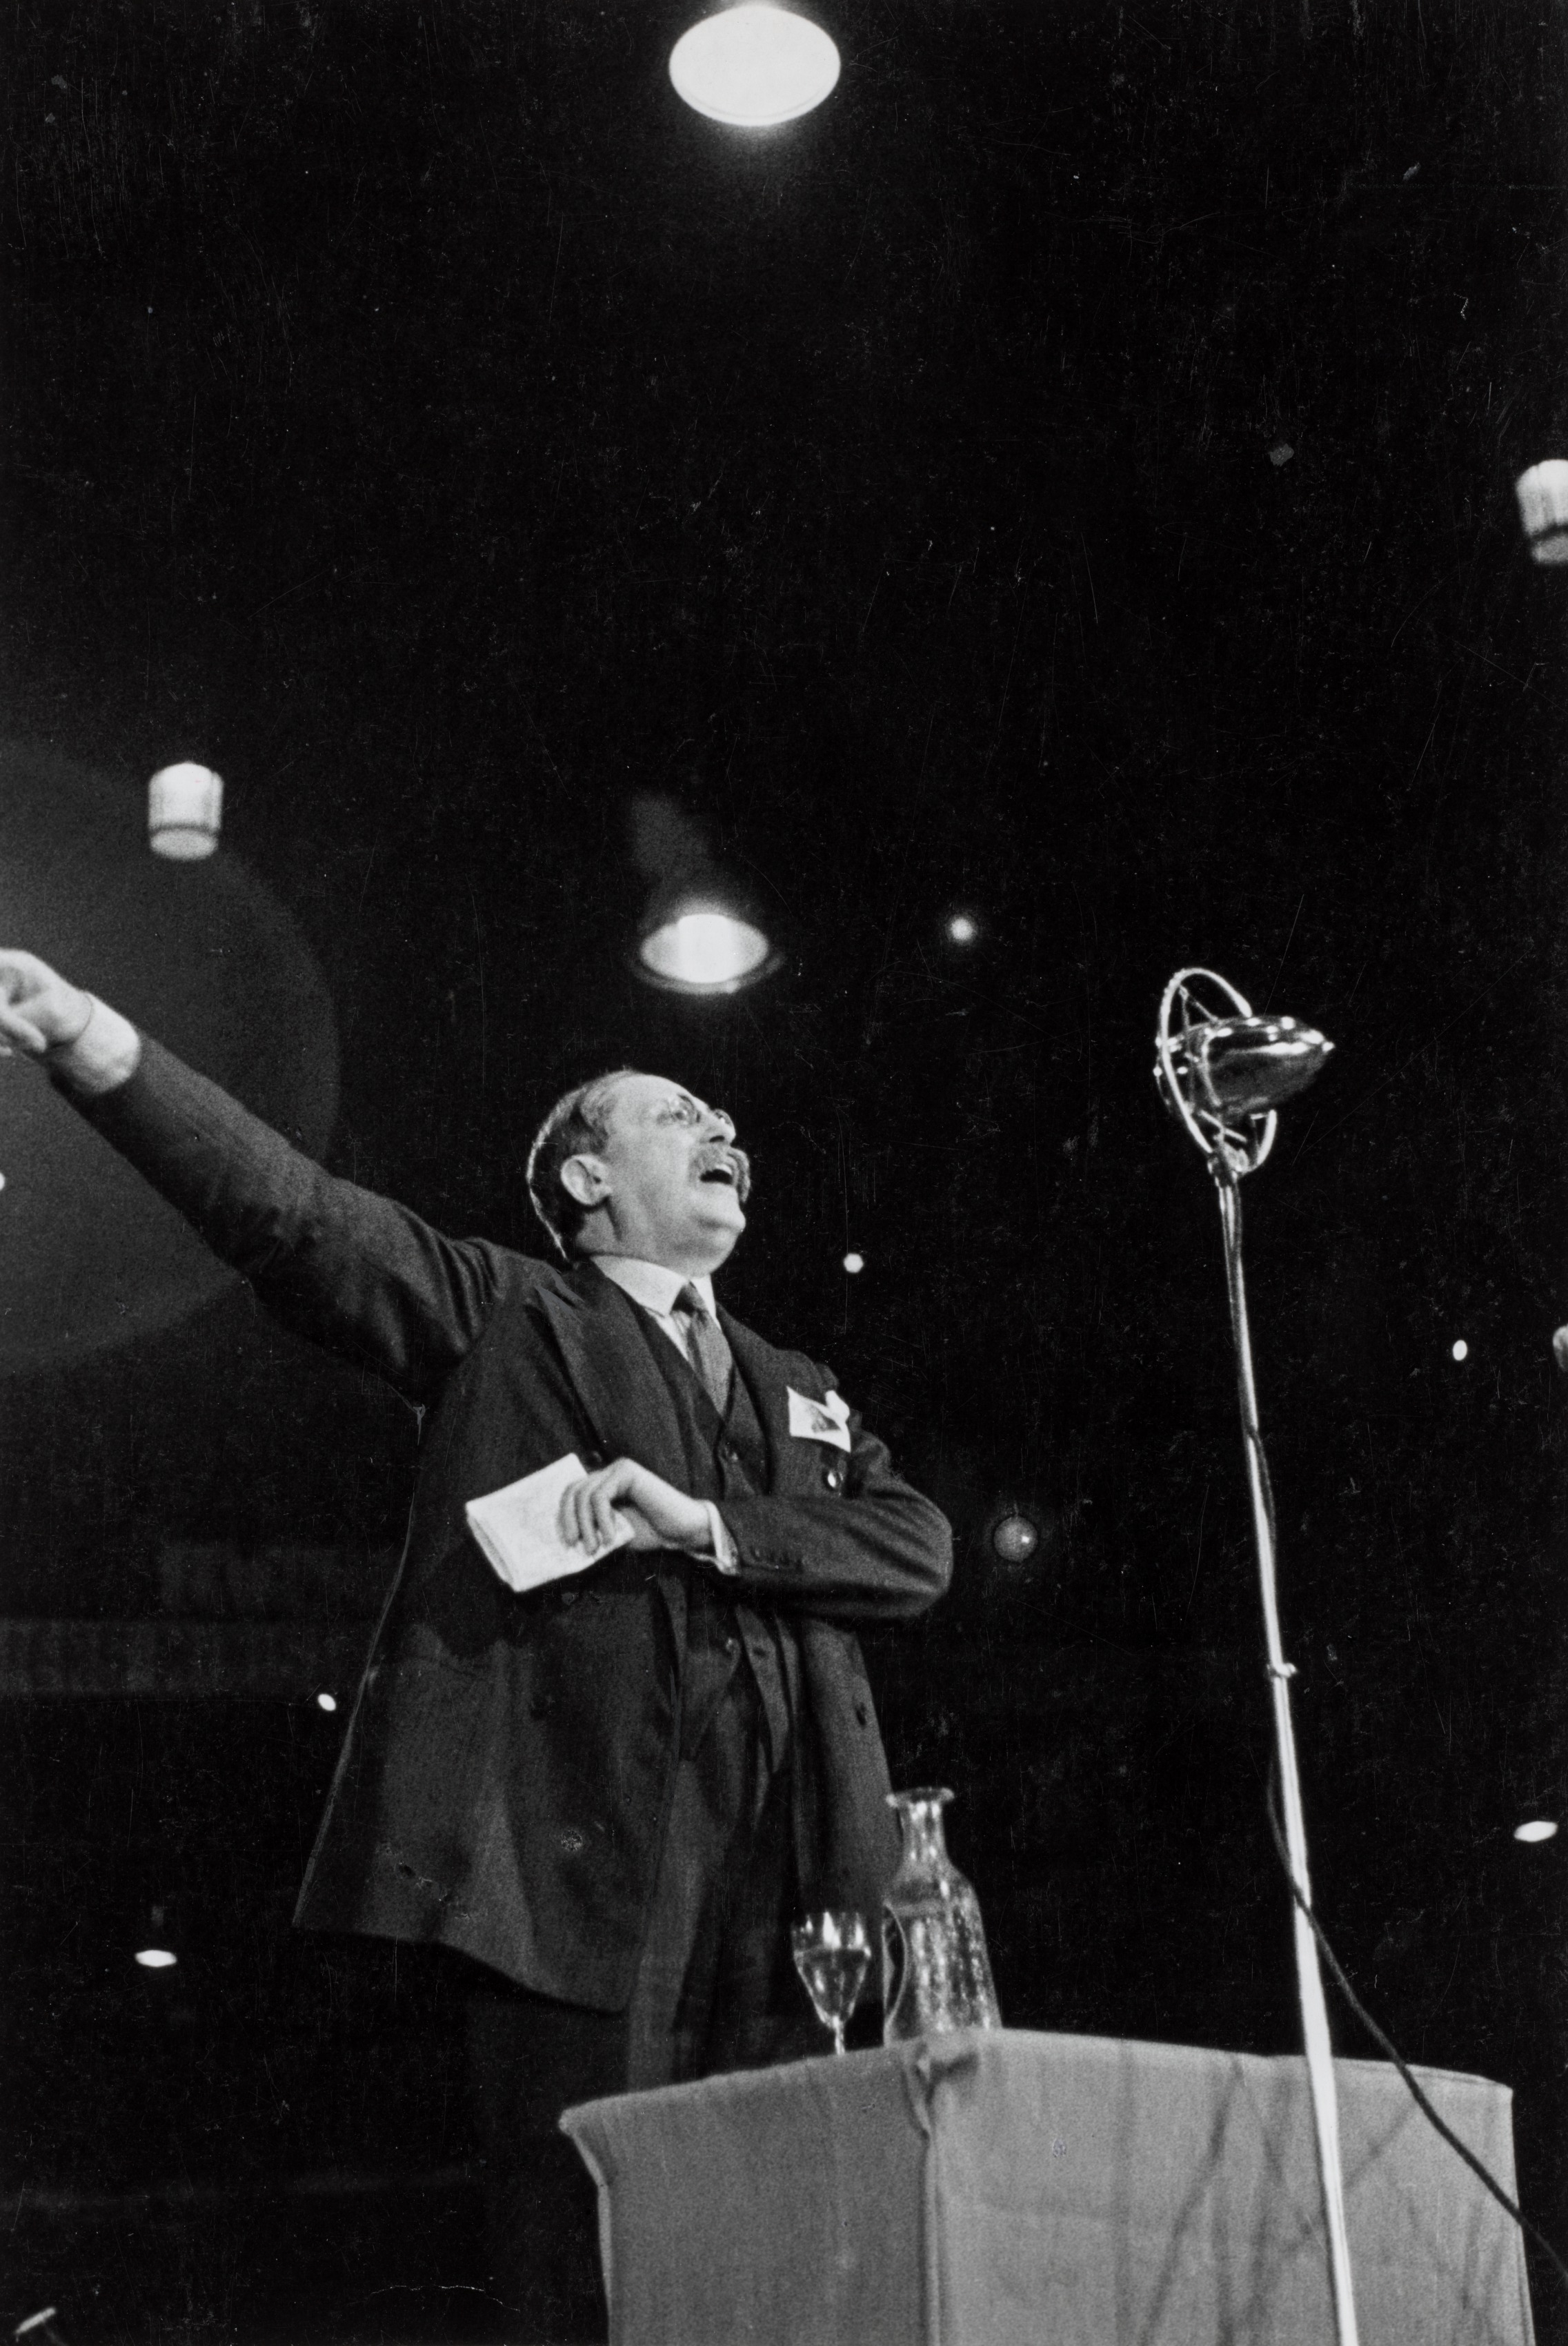 Léon Blume Raising Arm While Giving Speech, Velodrome d'Hiver, 15th Arronissement, Paris, June 1936